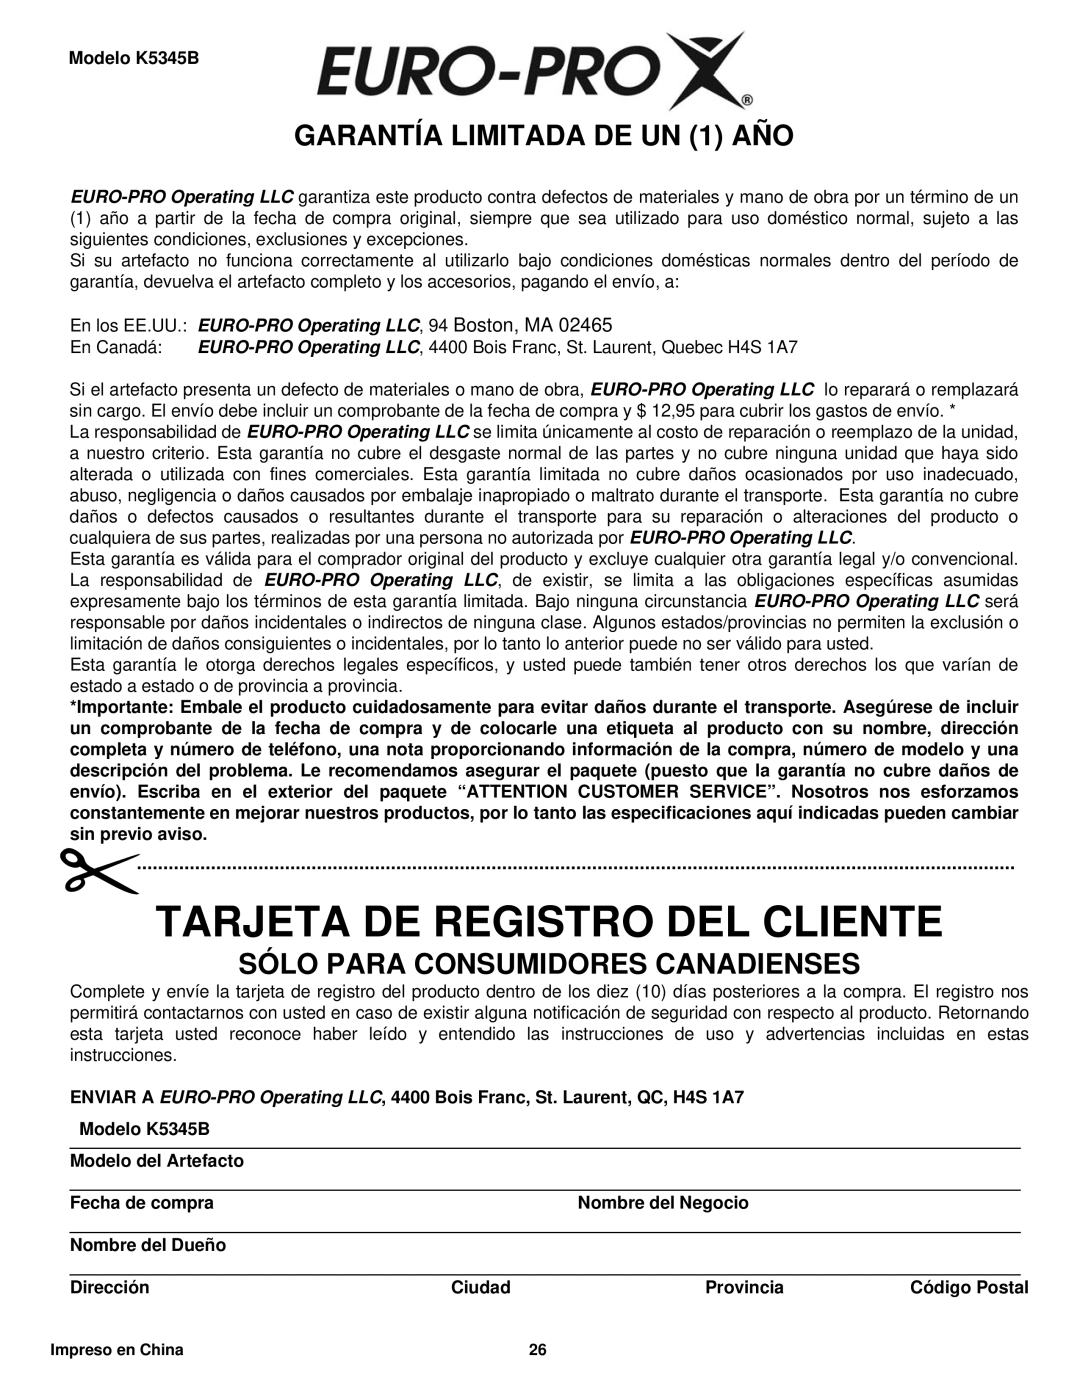 Euro-Pro K5345B Tarjeta De Registro Del Cliente, GARANTÍA LIMITADA DE UN 1 AÑO, Sólo Para Consumidores Canadienses 